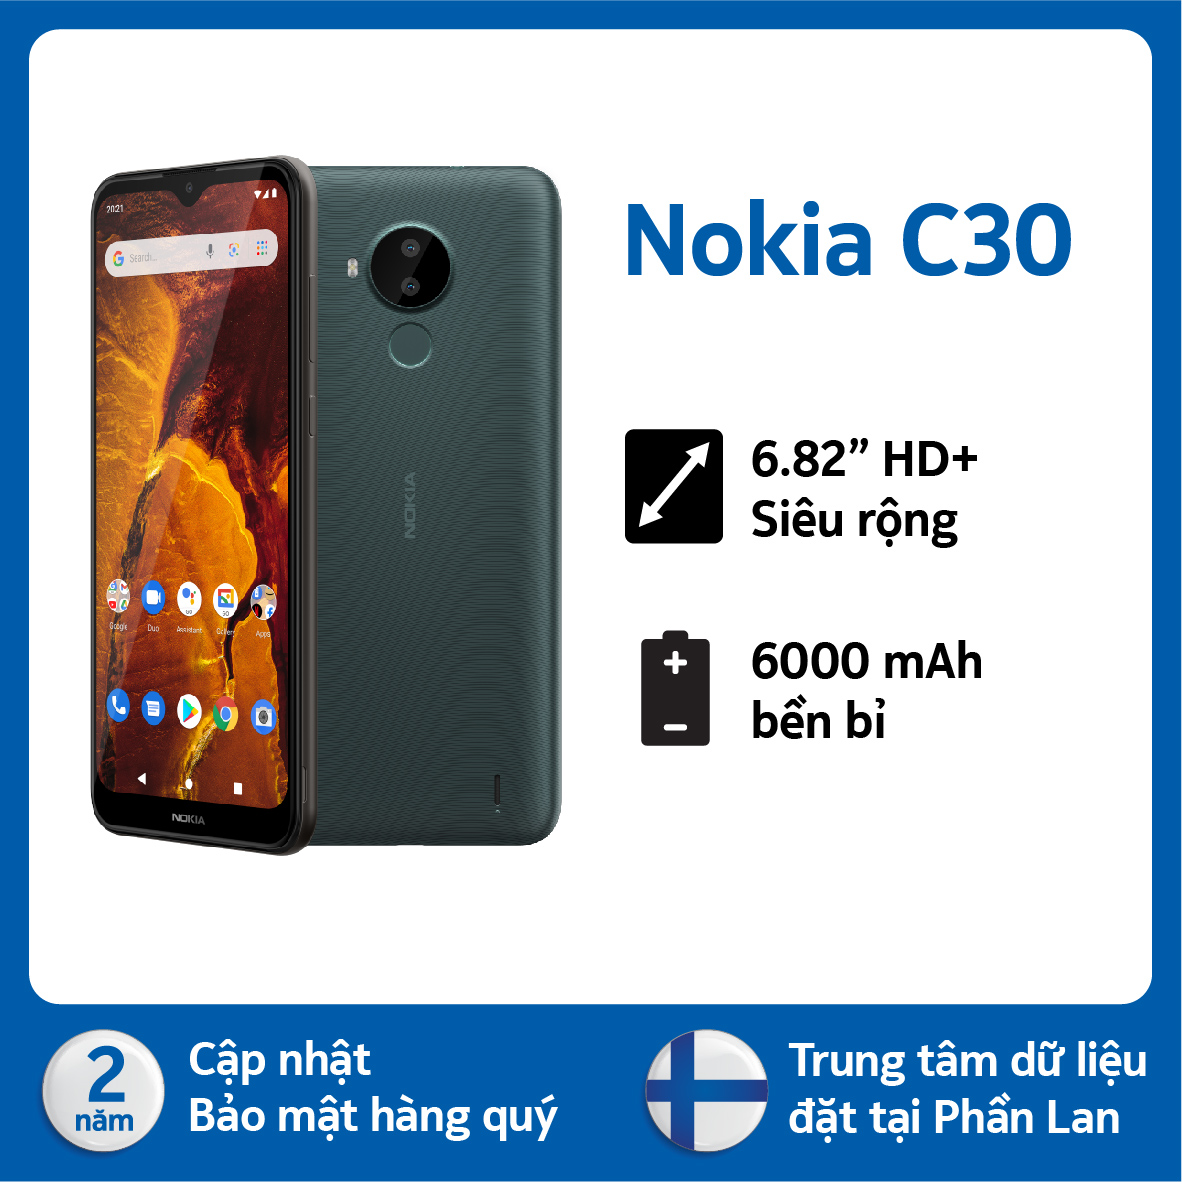 (Xả kho máy mới 100%) Điện thoại Nokia C30 2GB/32GB pin 6000mAh- Hàng chính hãng, Nguyên Hộp